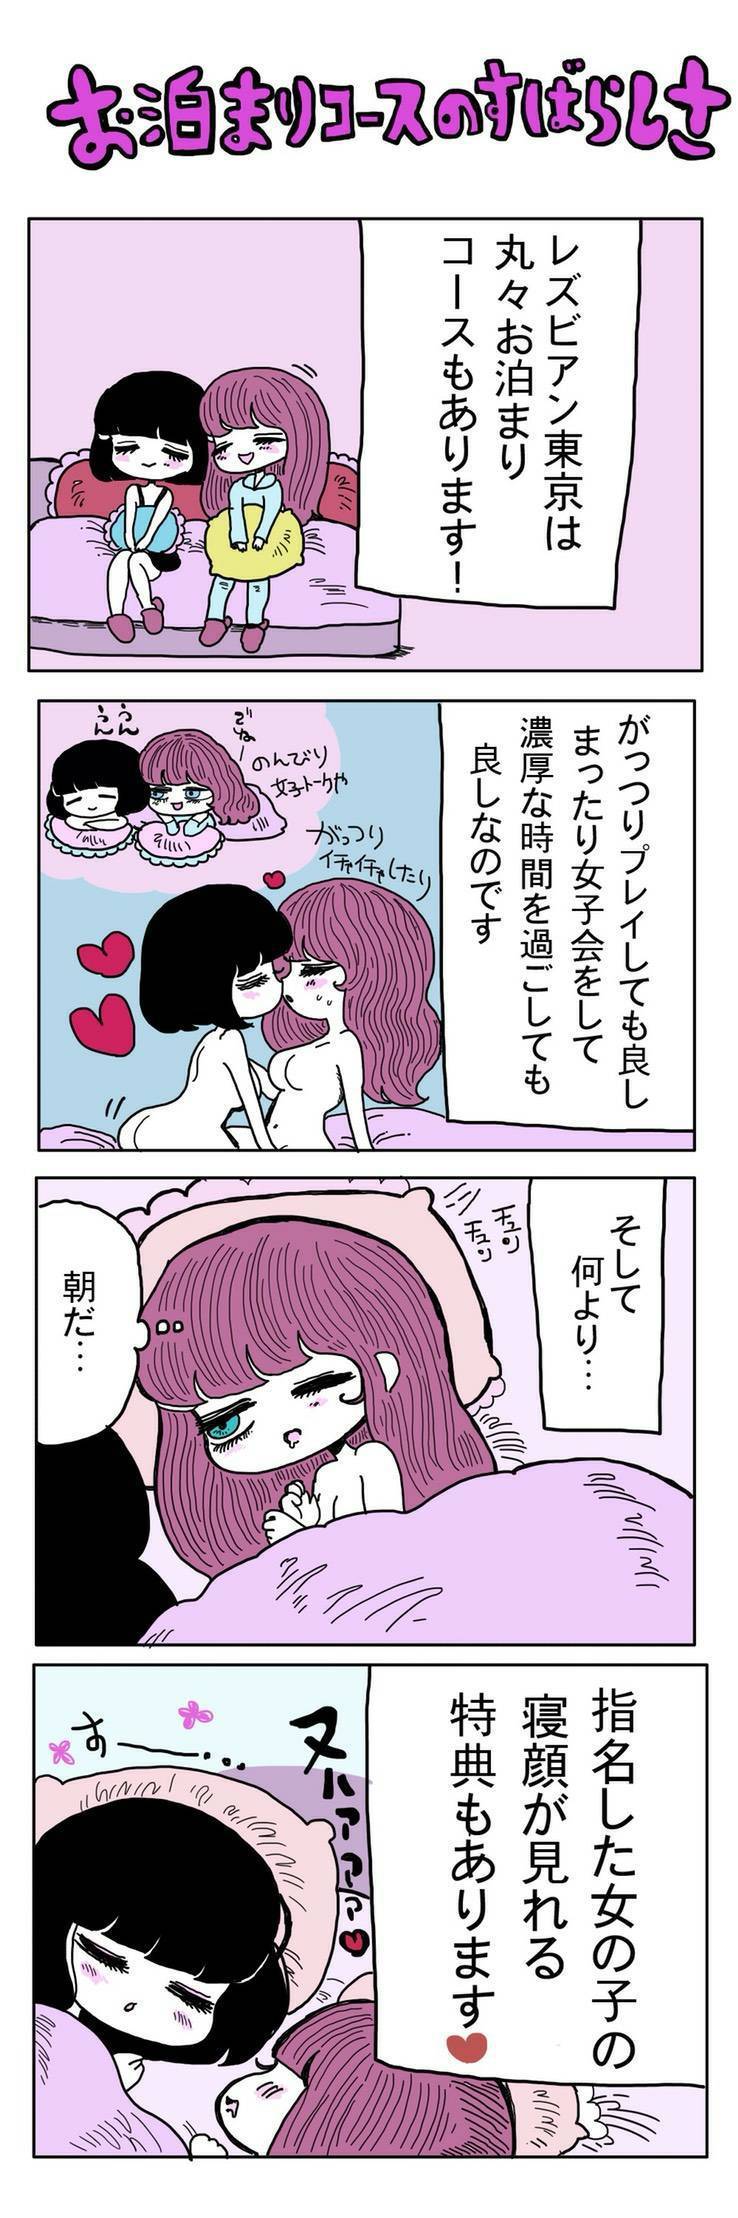 レズビアン東京 漫画2